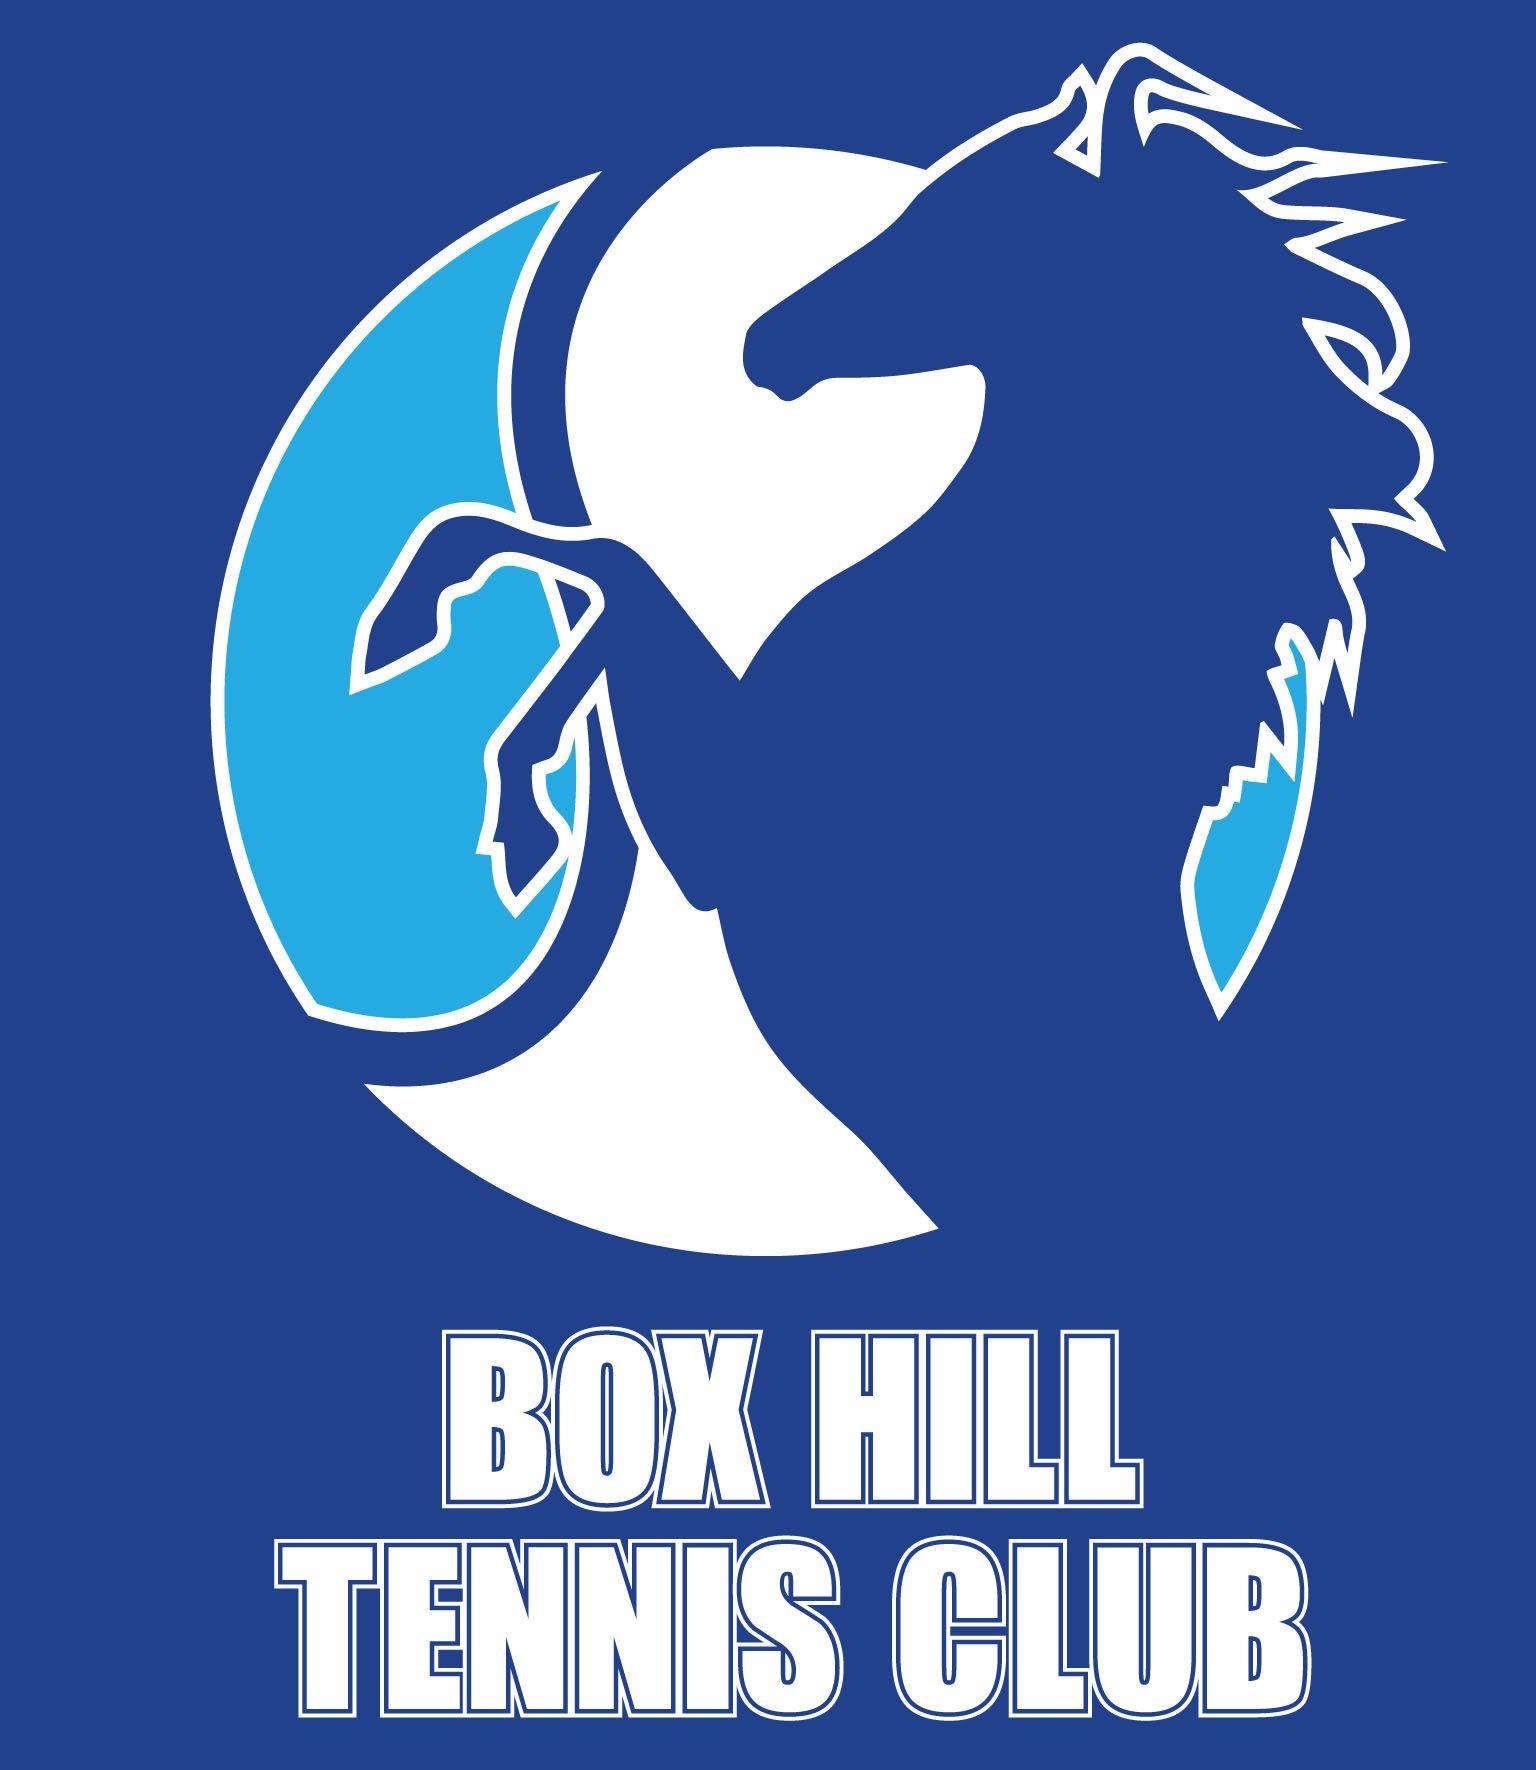 Blue Tennis Logo - Box Hill Tennis Club - Victoria - Australia